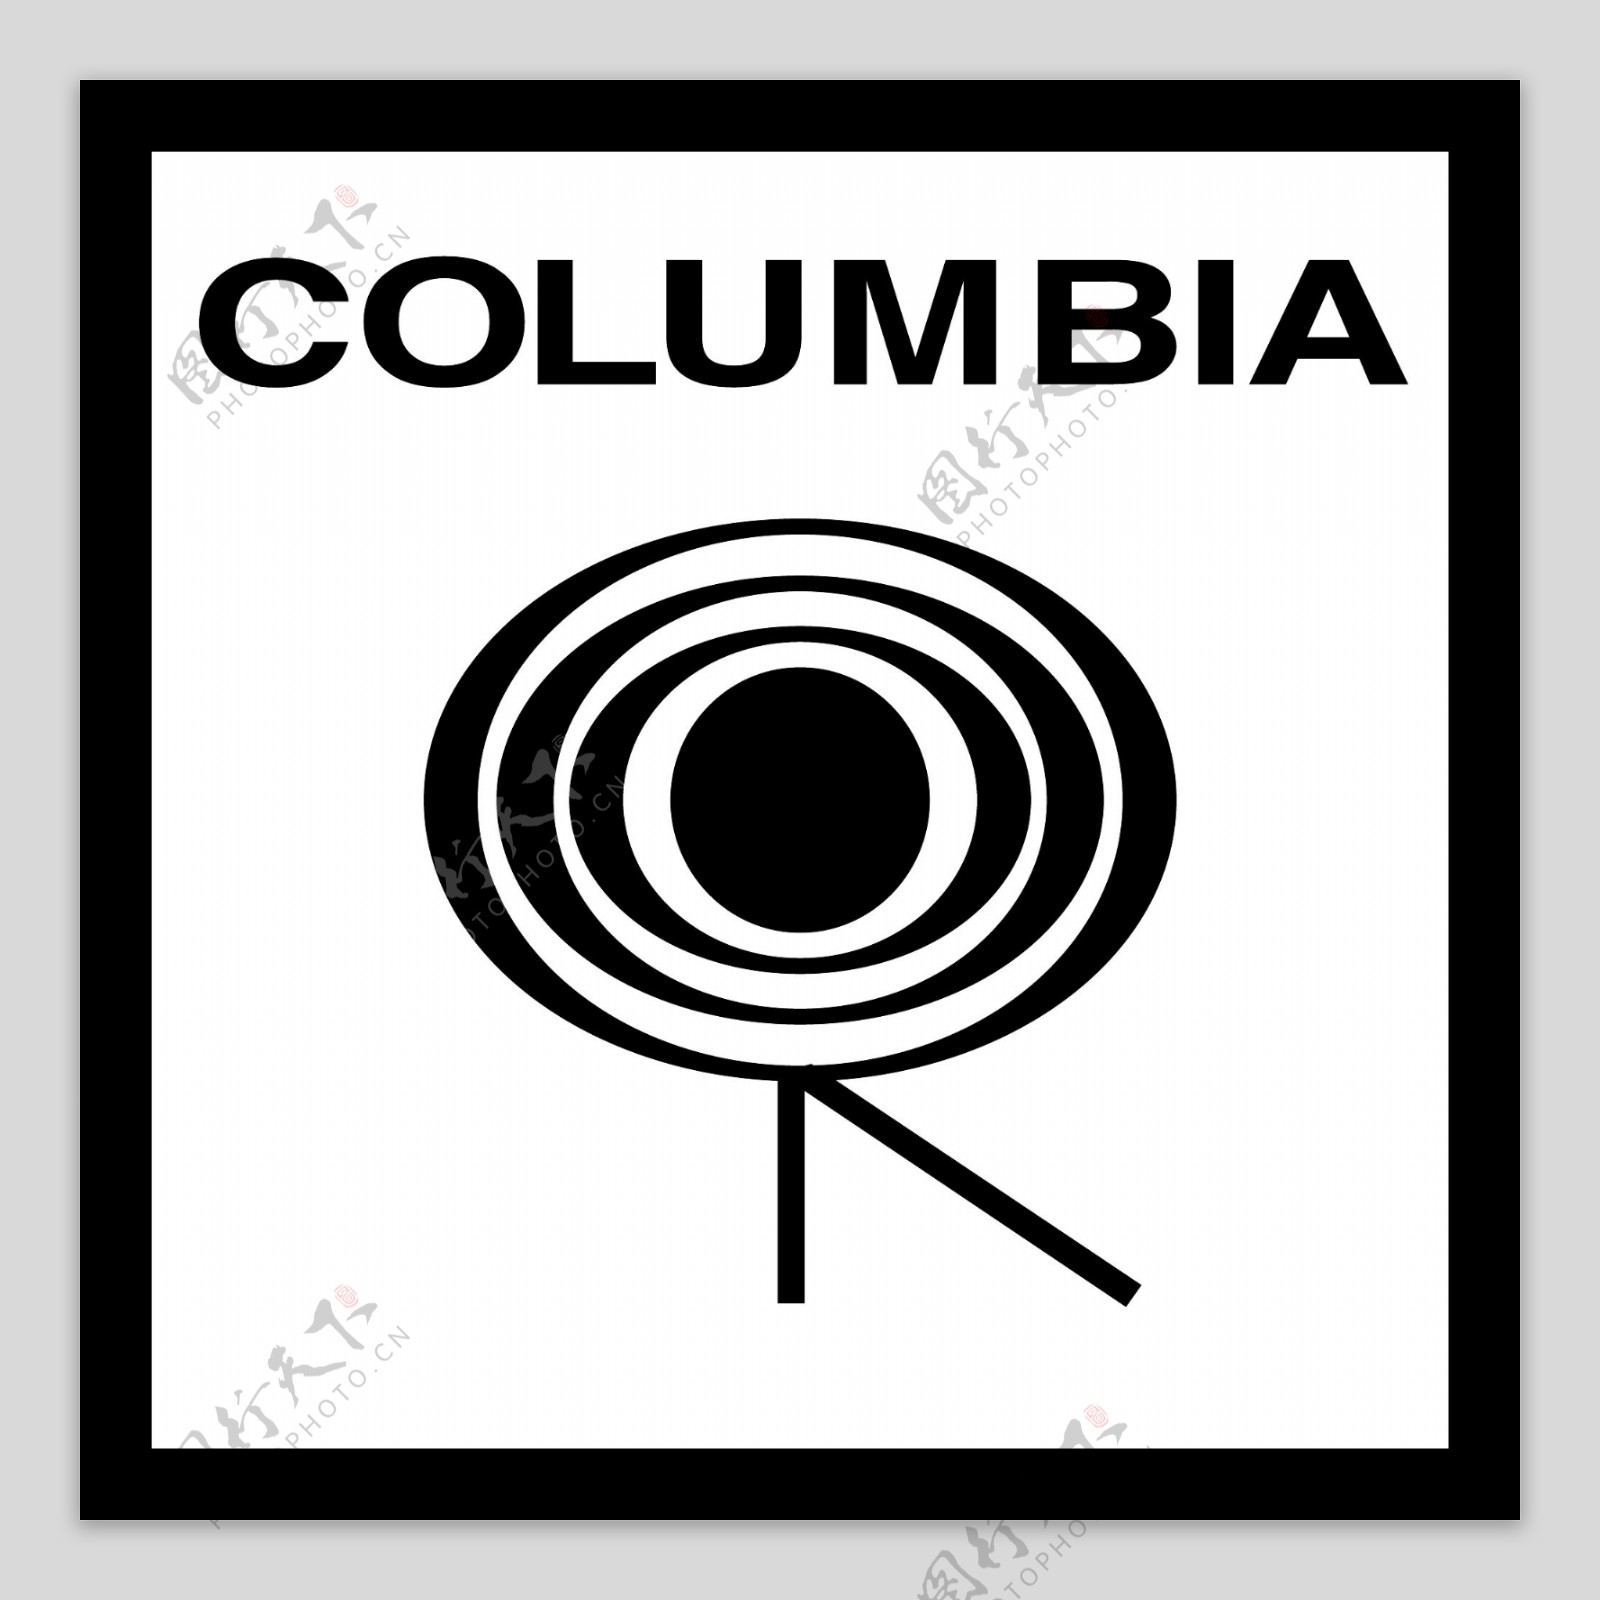 哥伦比亚的标志